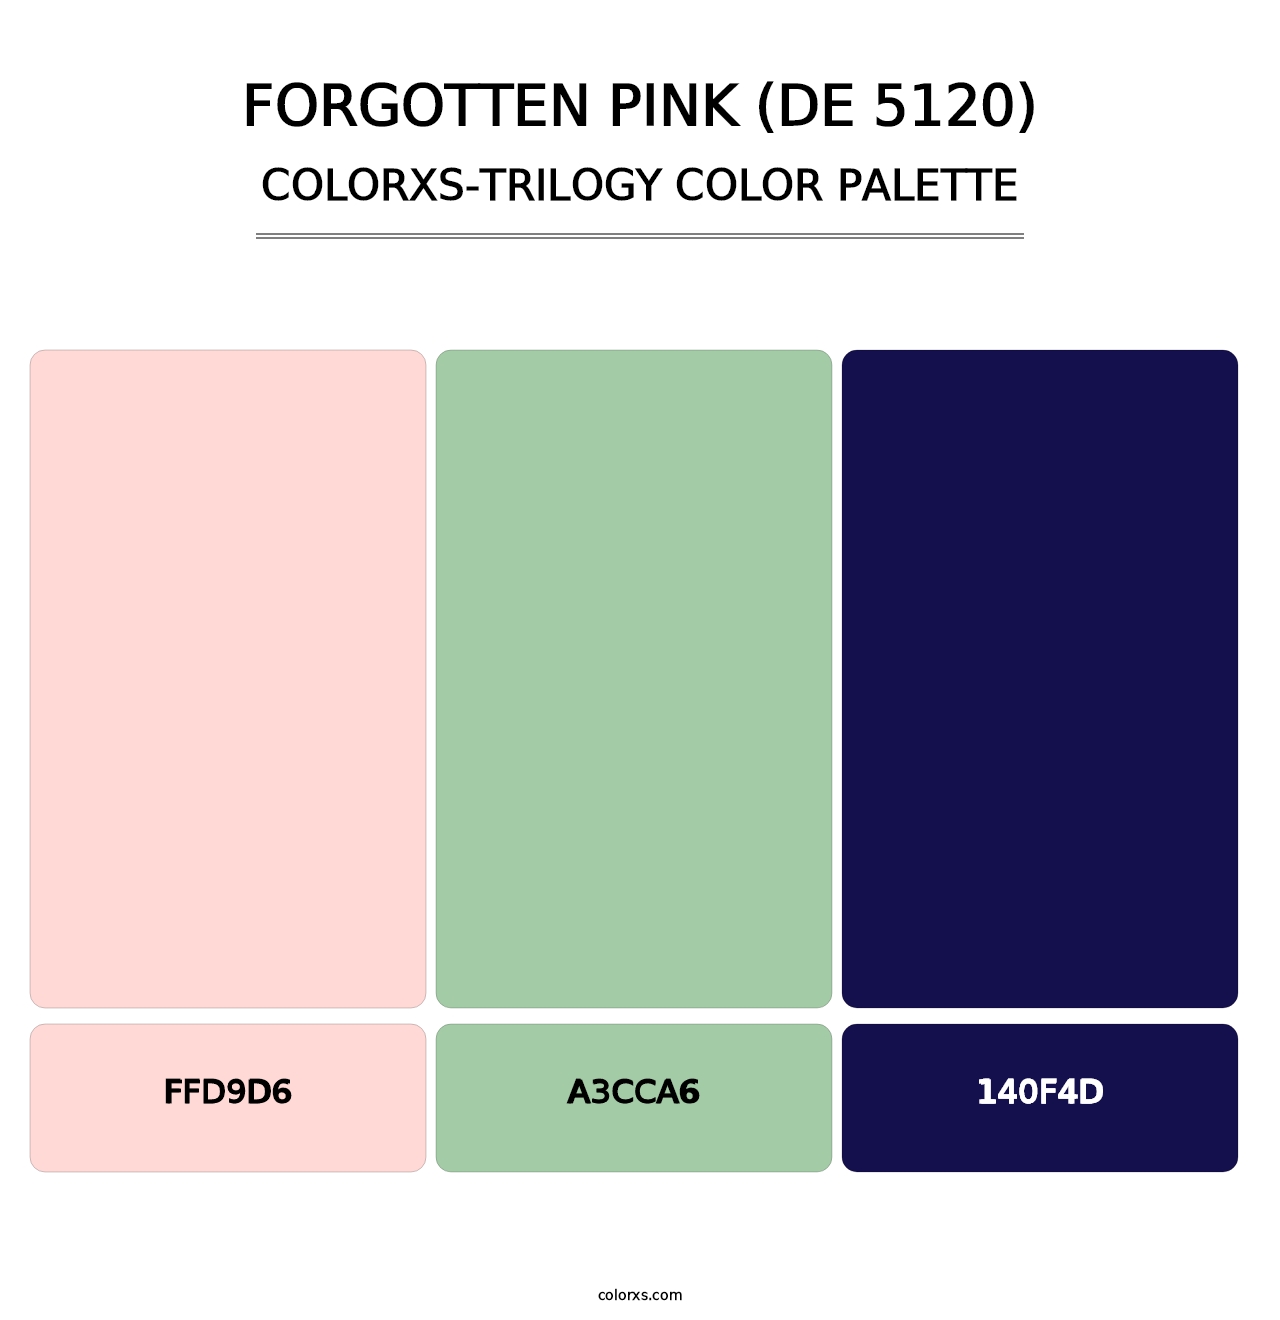 Forgotten Pink (DE 5120) - Colorxs Trilogy Palette